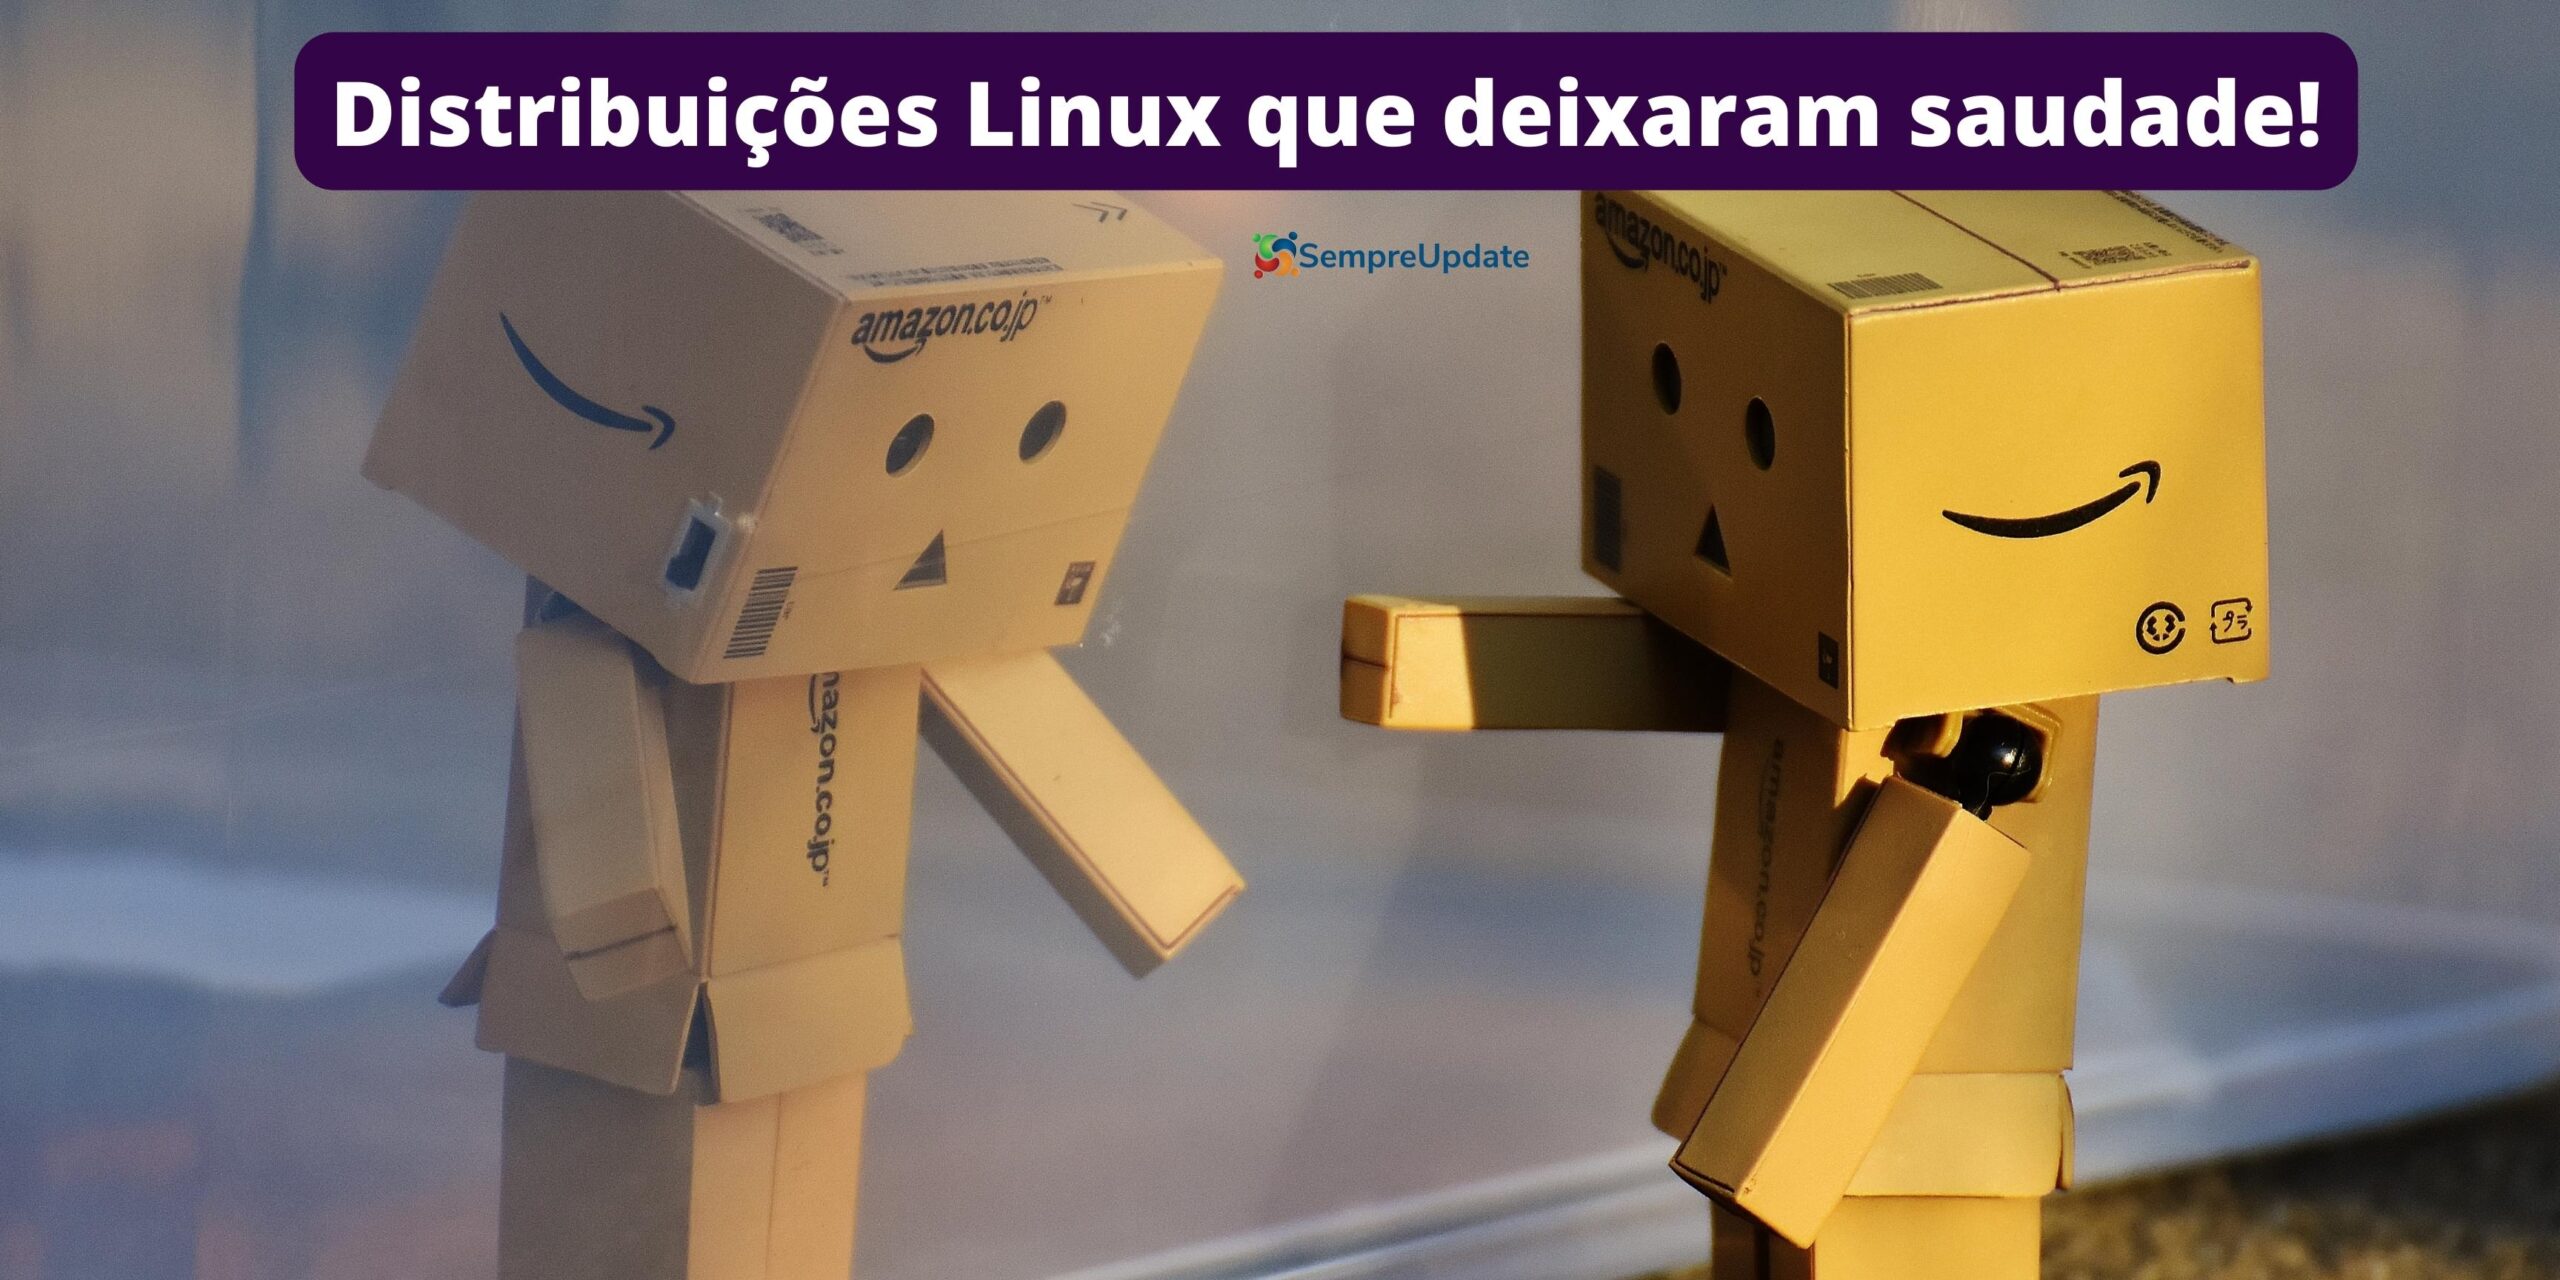 Distribuições Linux que deixaram saudades